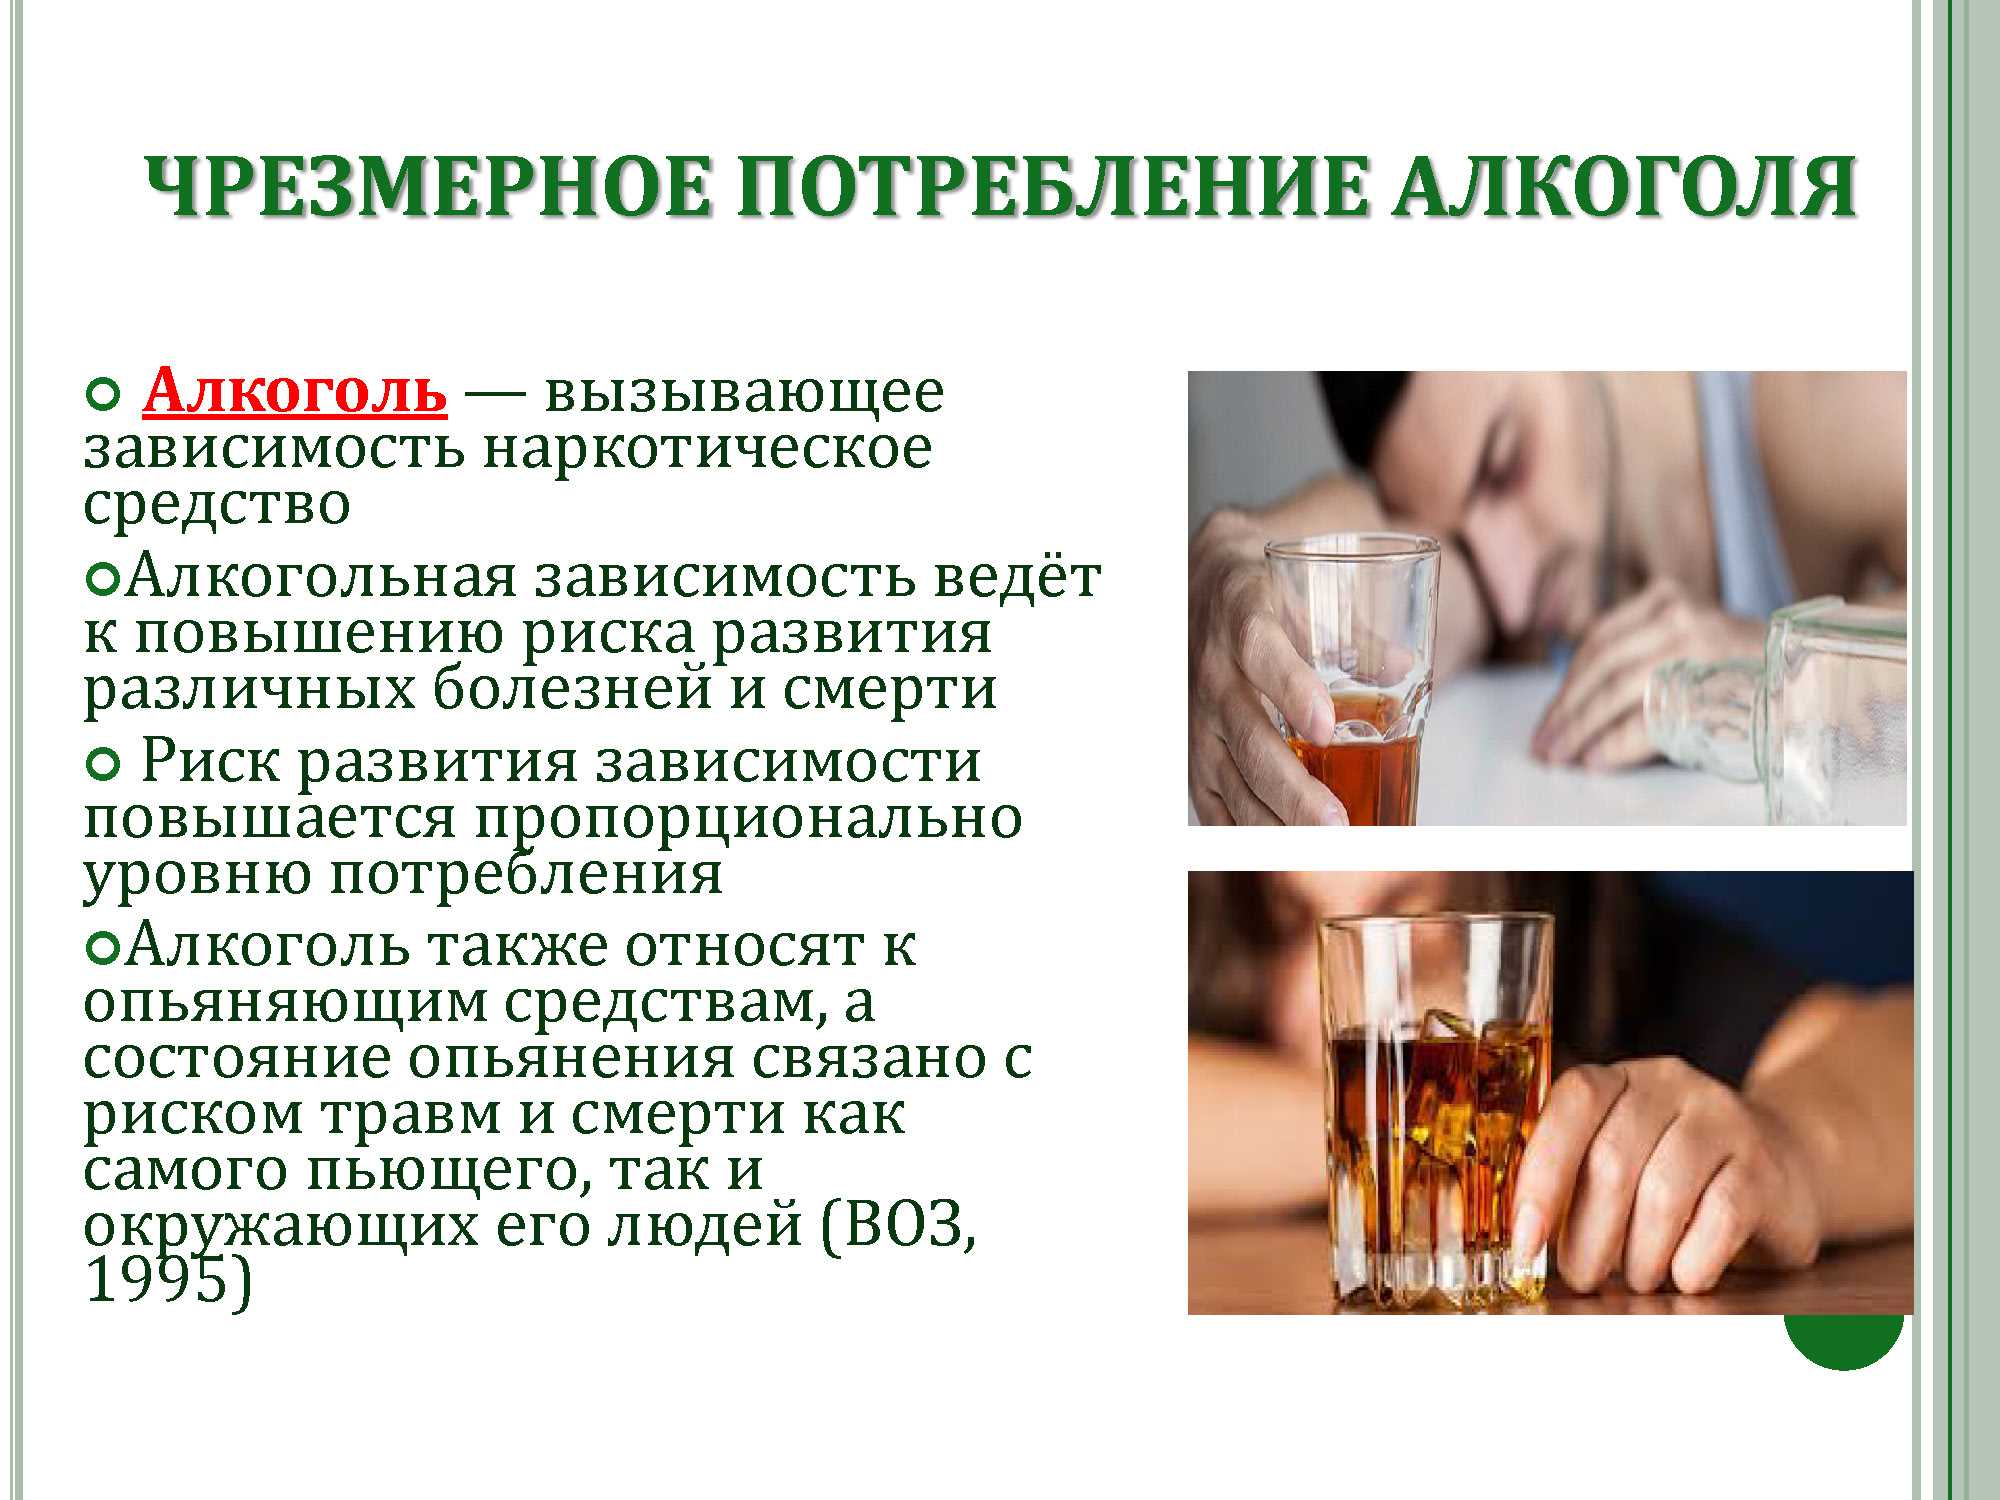 Причины злоупотребления алкоголем. Злоупотребление алкоголем. Алкогольная зависимость.